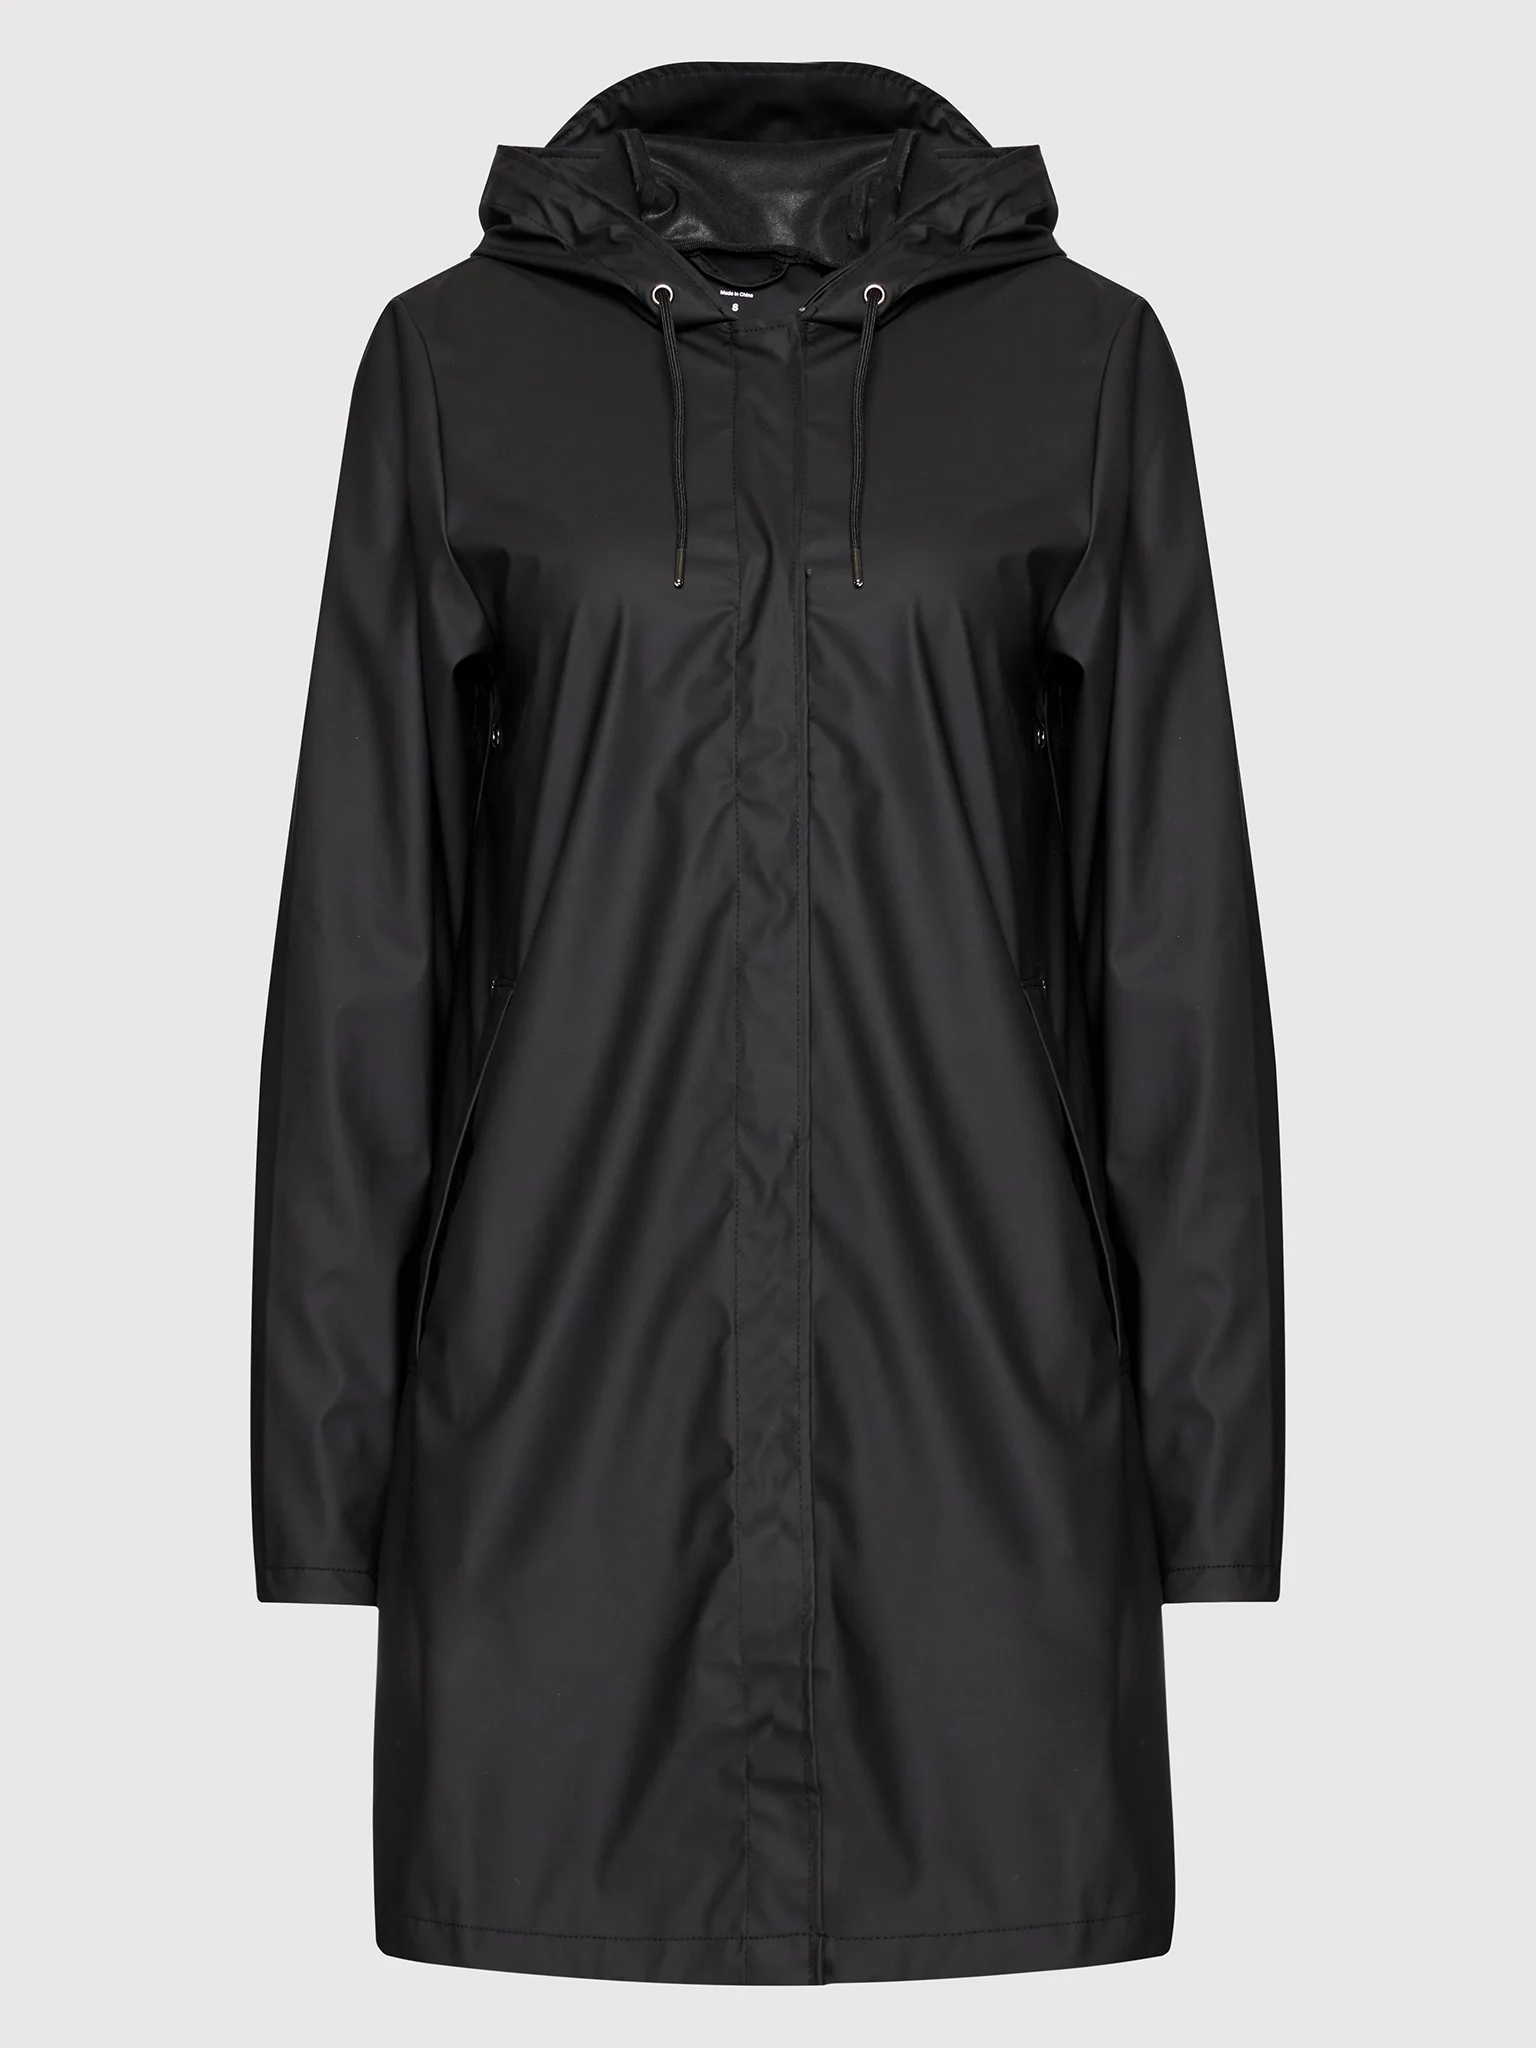 Rains – A-Line Jacket